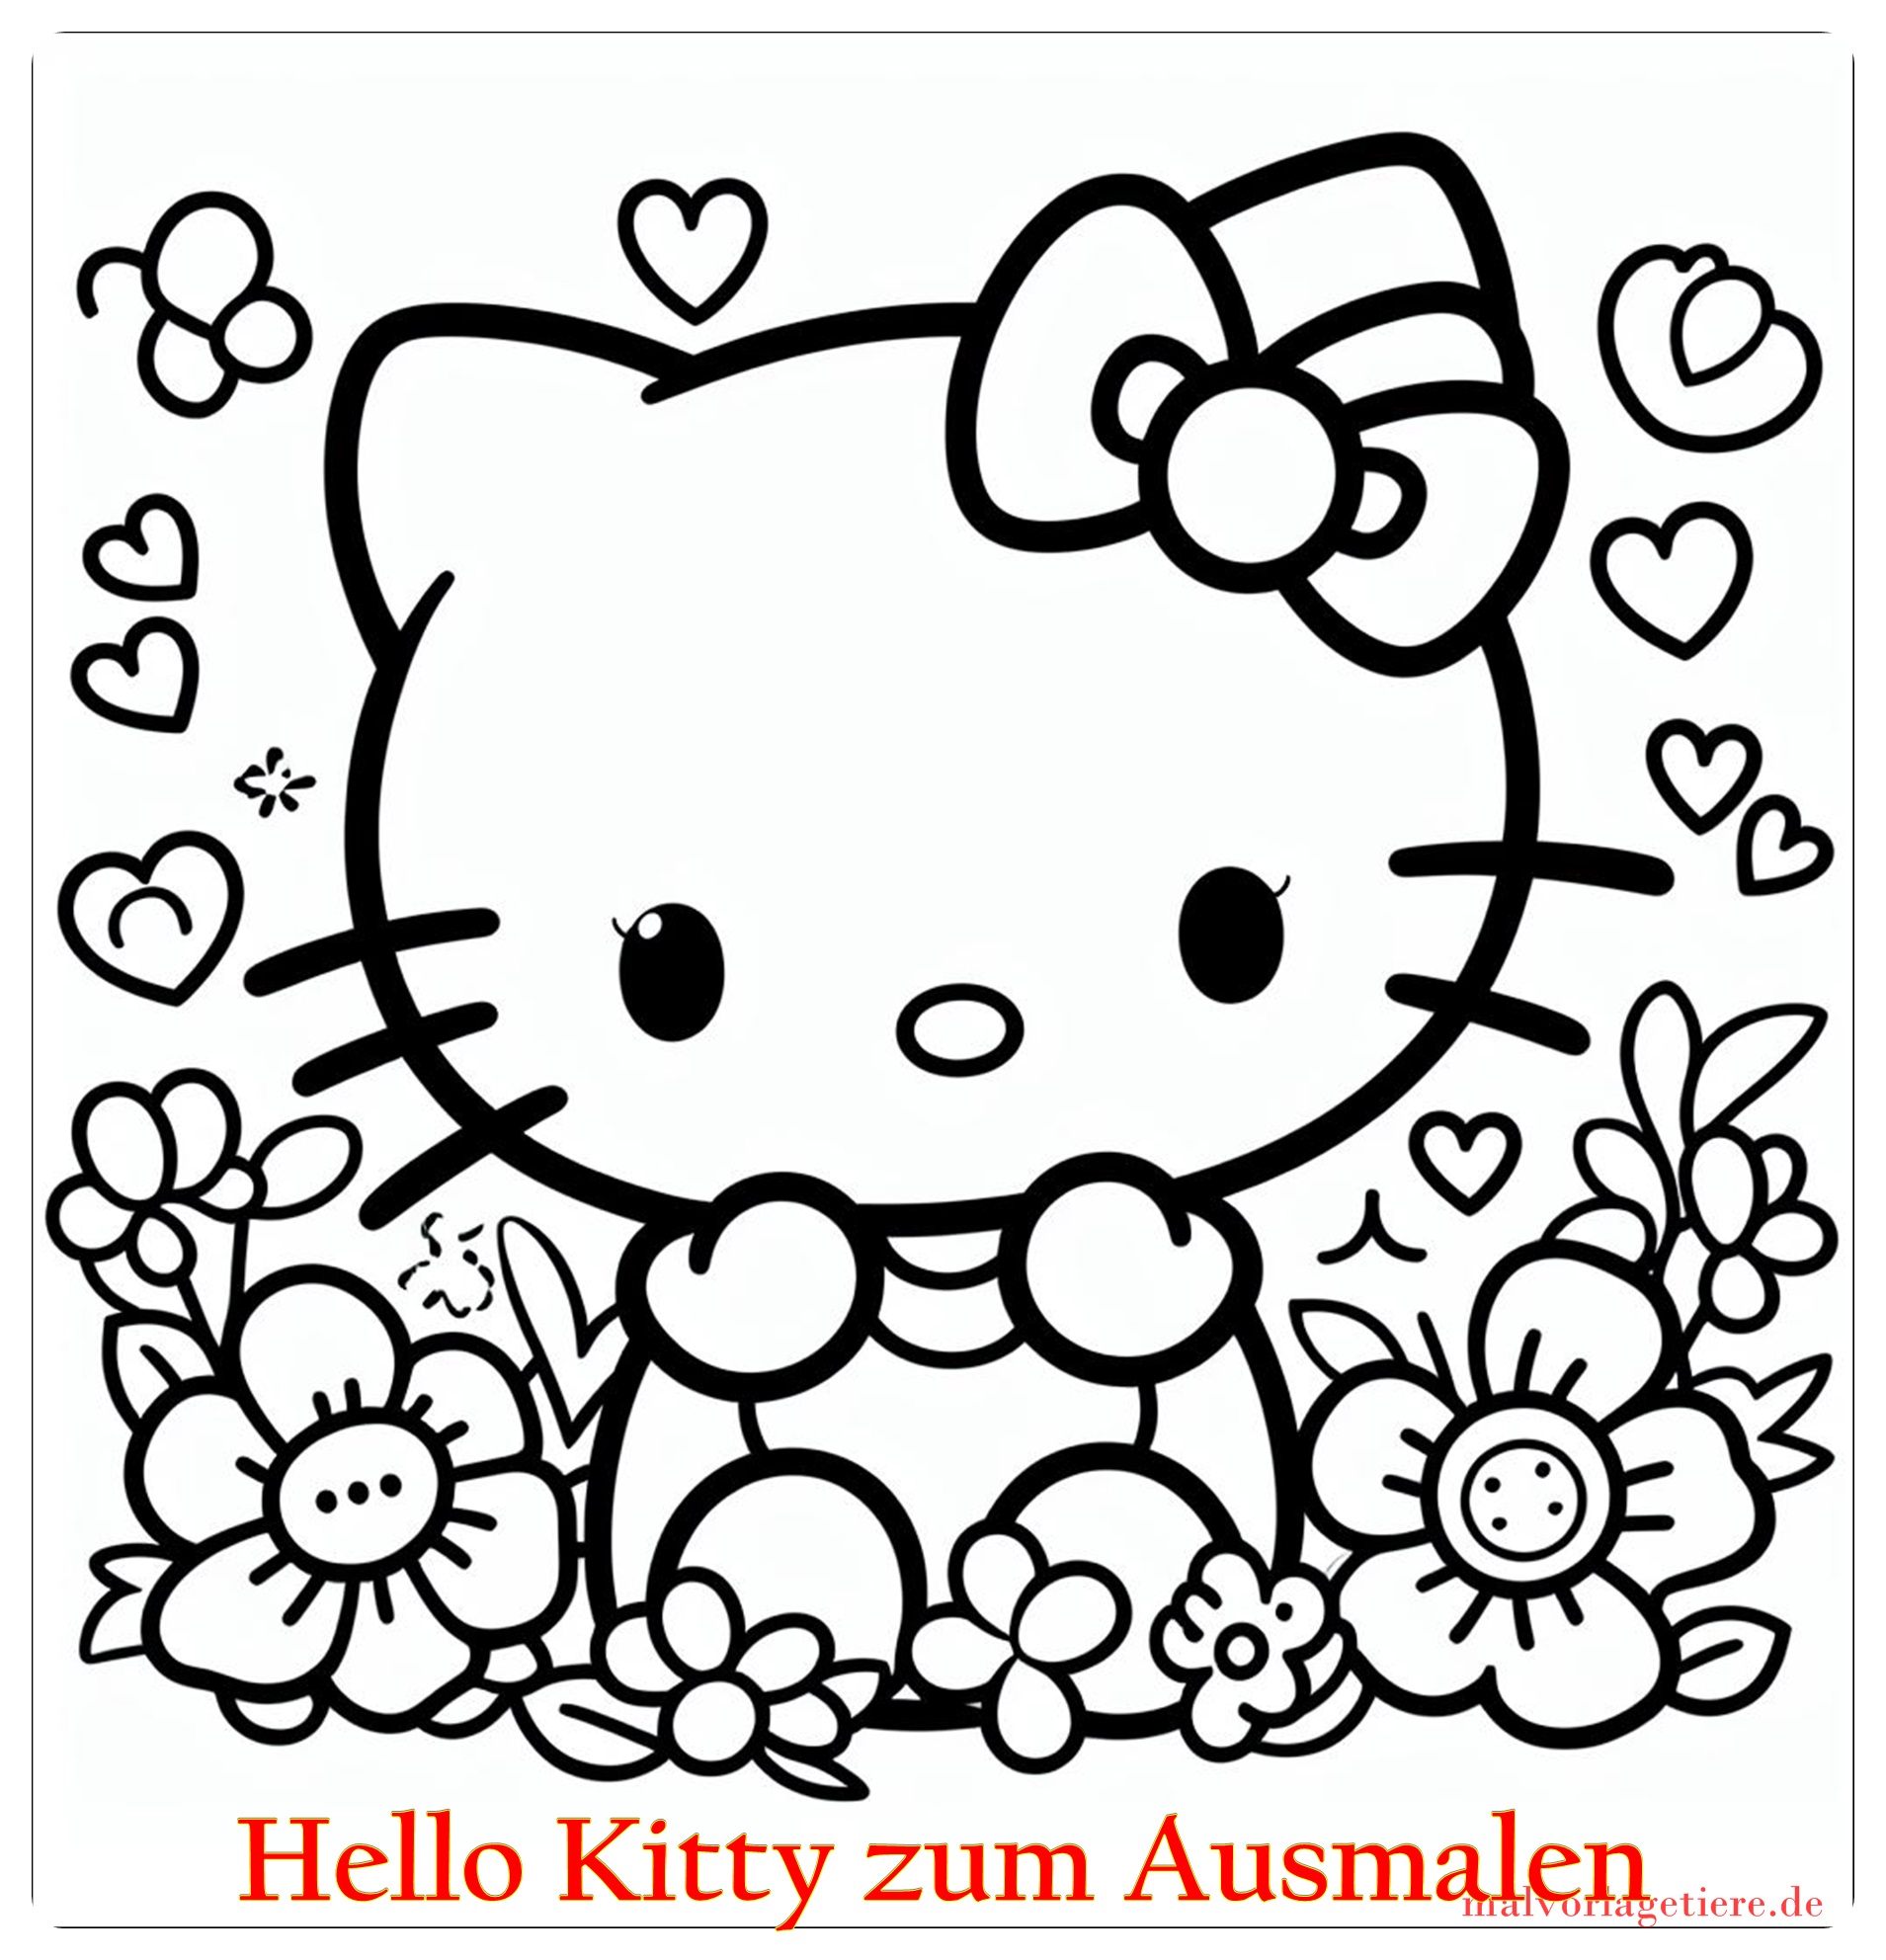 Hello Kitty zum Ausmalen 01 by malvorlagetiere